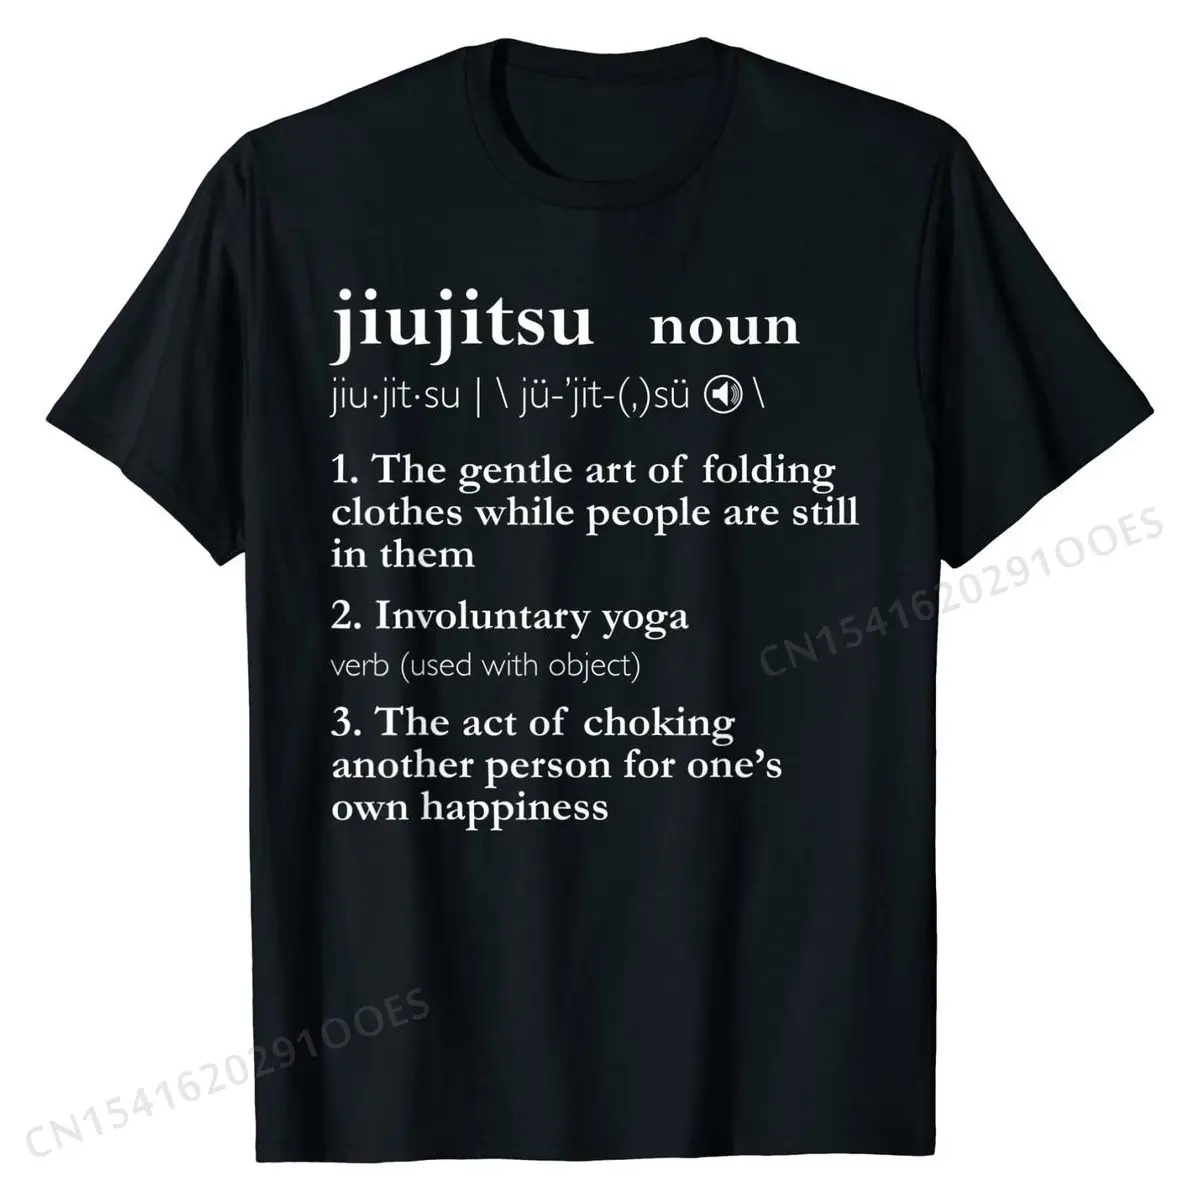 Mens Brazilian Jiu Jitsu Shirts Men Funny BJJ T Shirt Gifts Him T-Shirt Tshirts Customized Fitted Tops & Tees Summer for Men